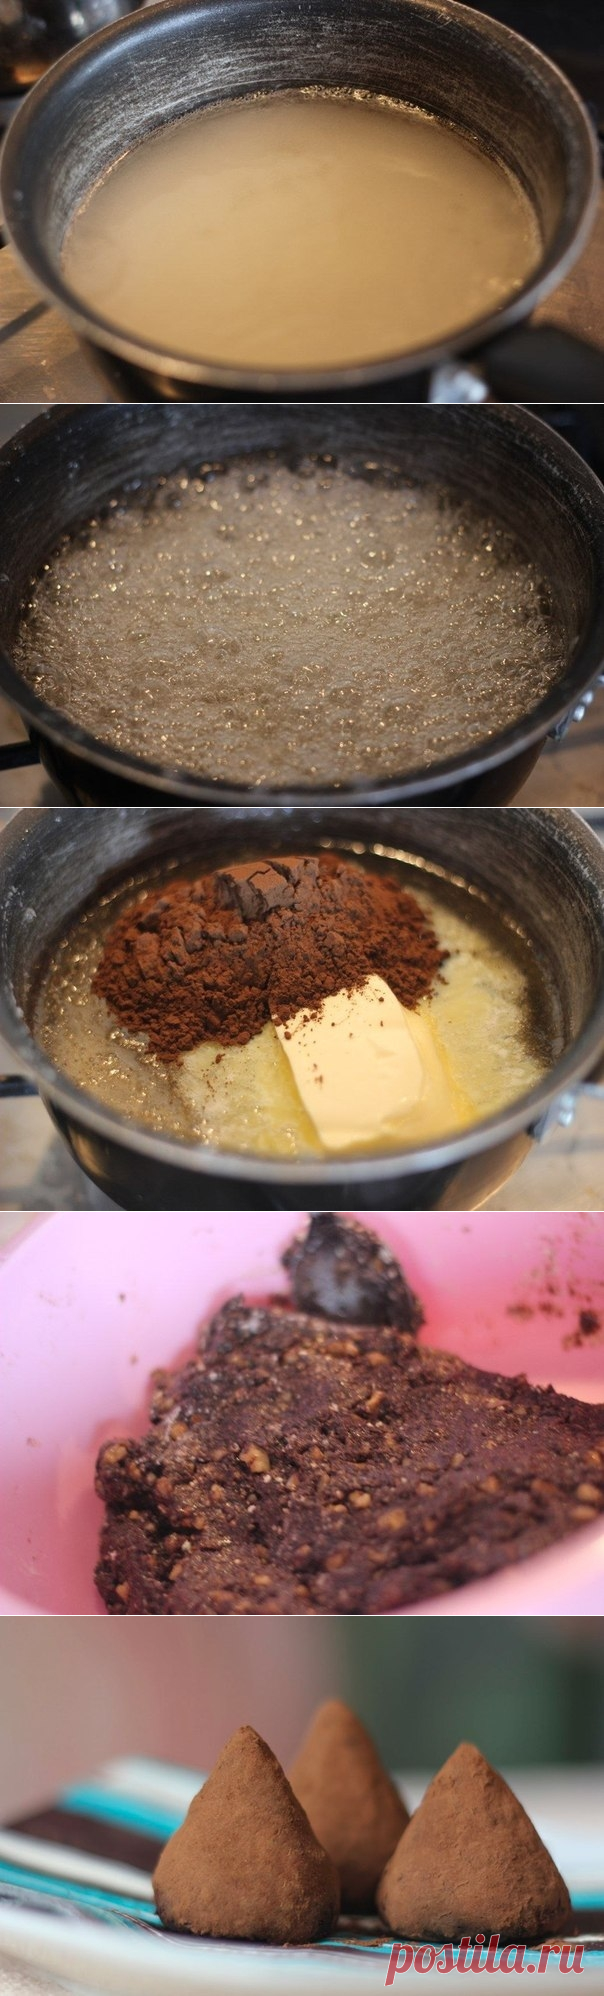 Как приготовить шоколадные трюфели - рецепт, ингридиенты и фотографии